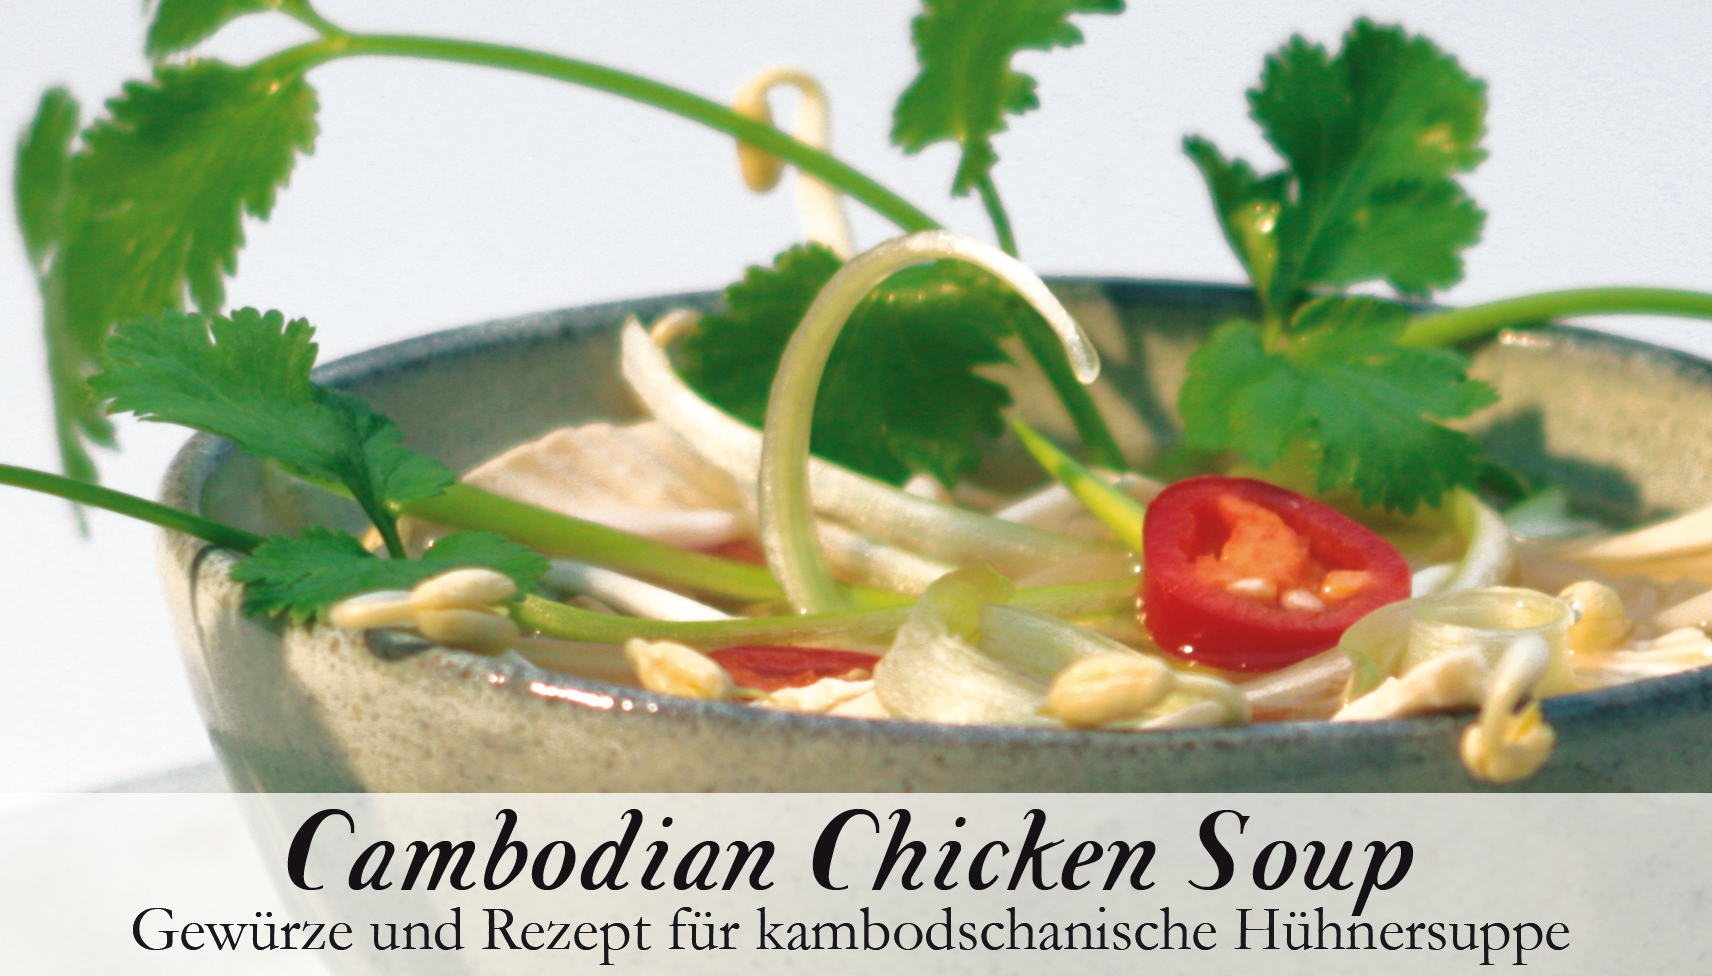 Cambodian Chicken Soup-Gewürzkasten